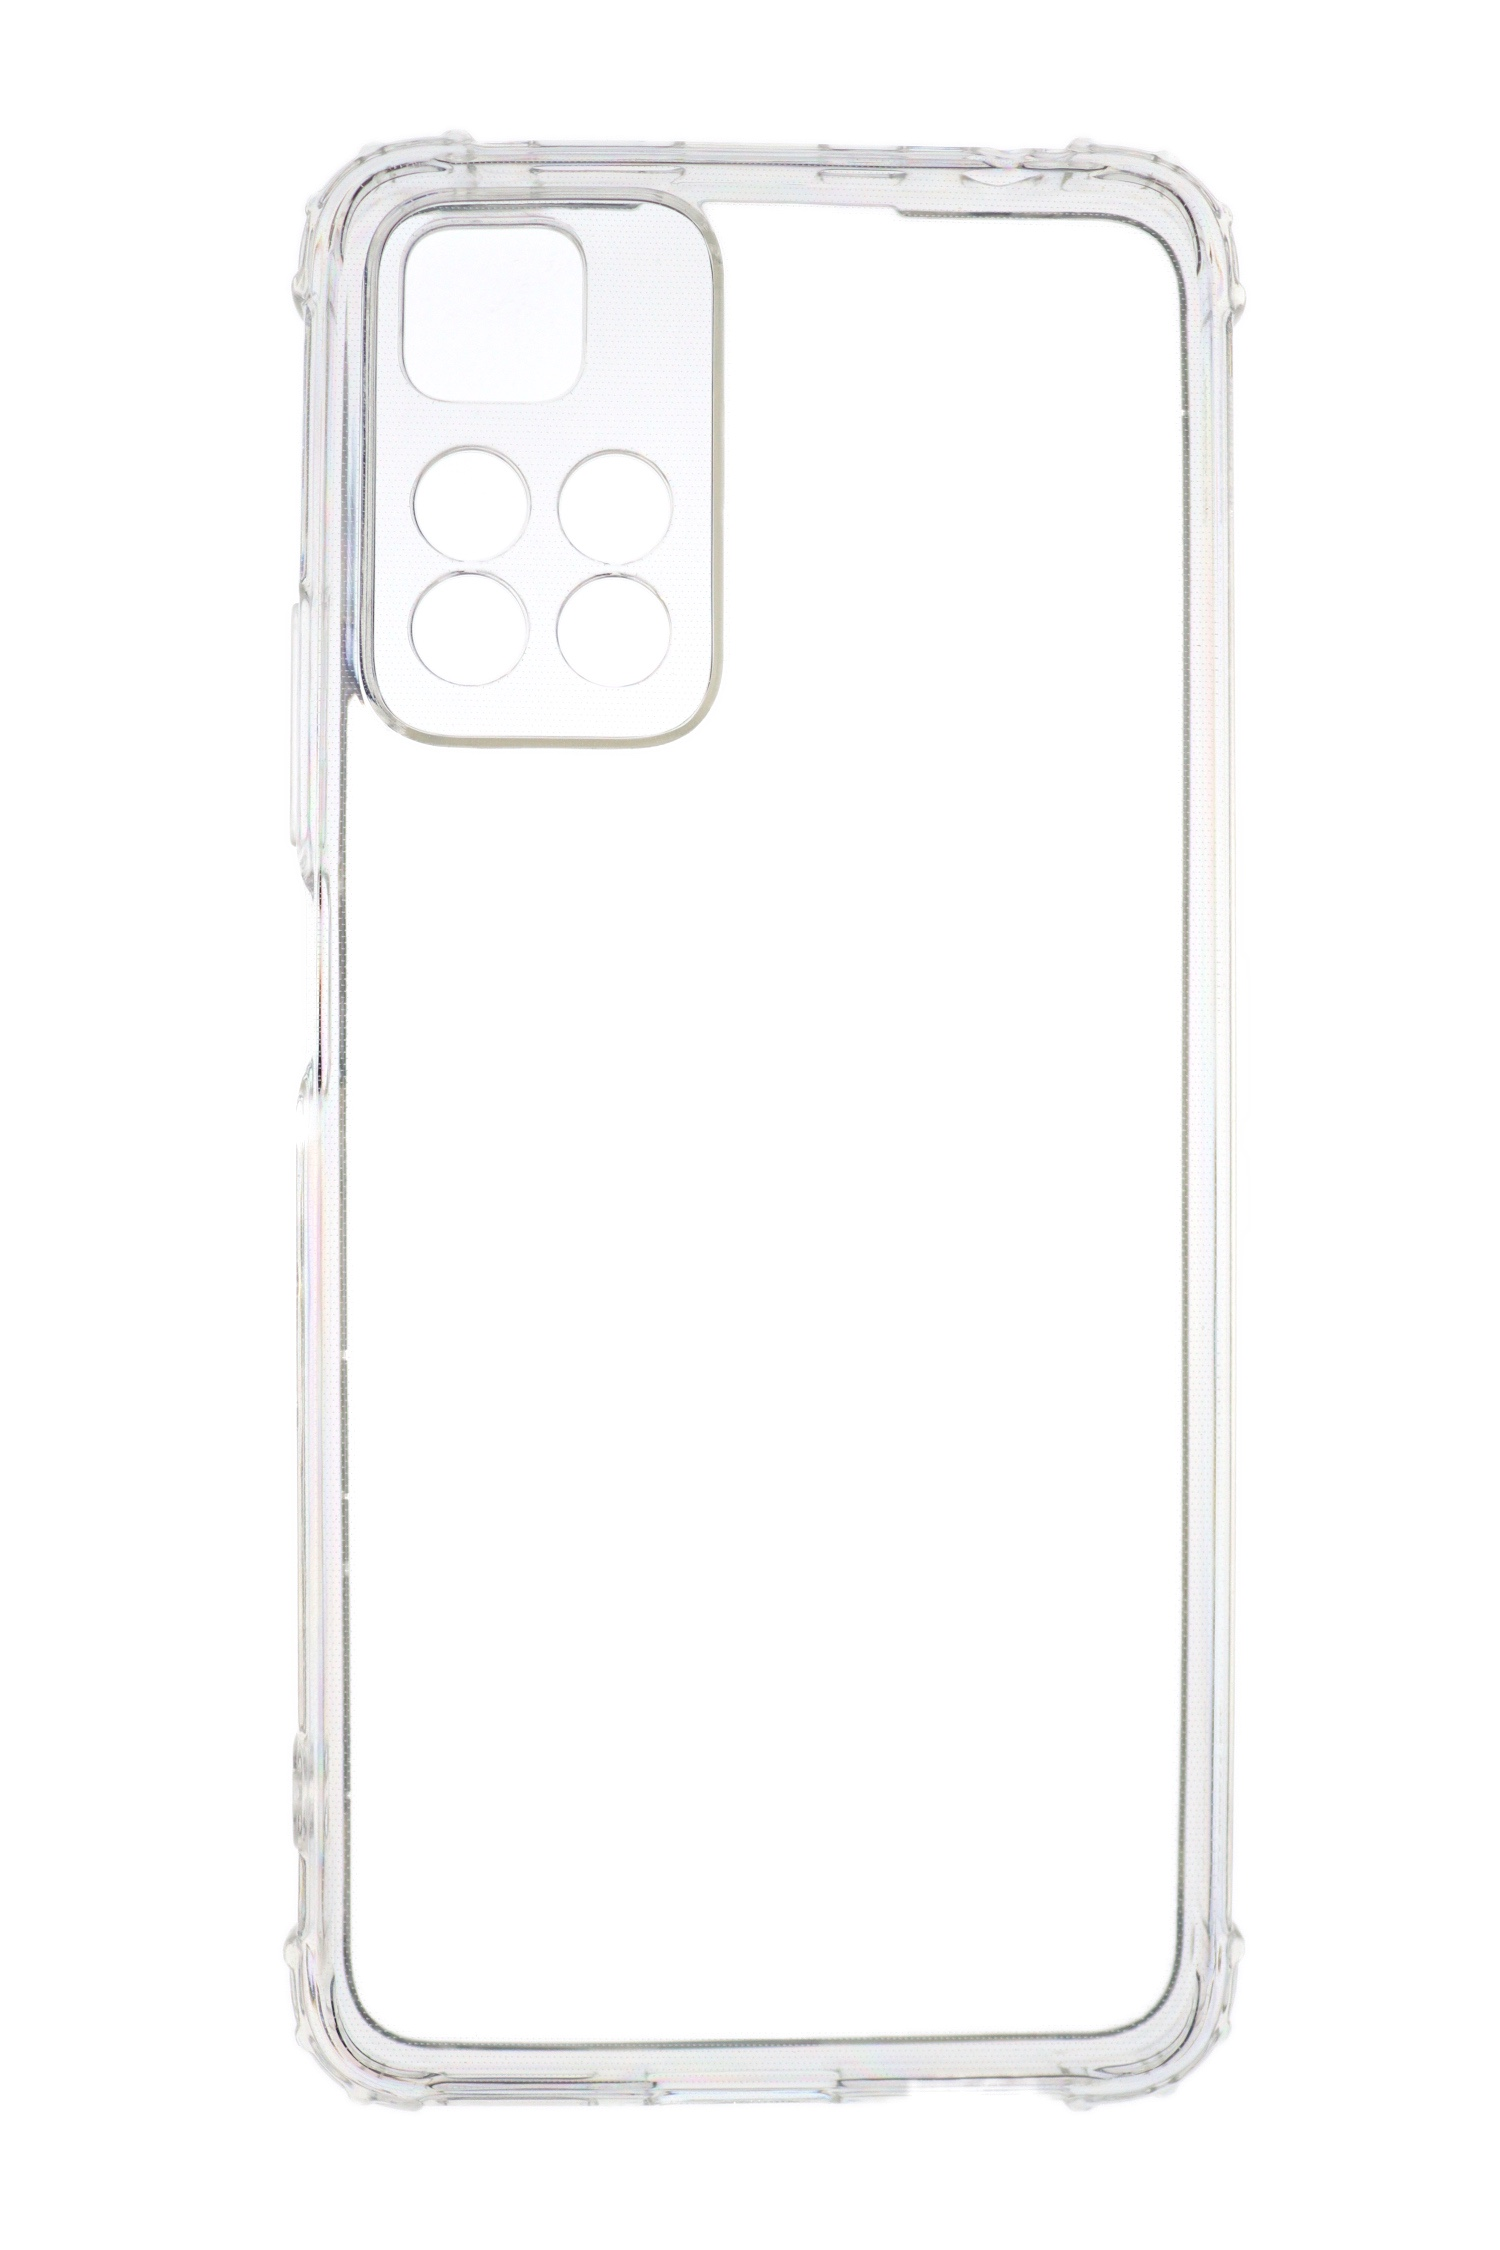 JAMCOVER 1.5 mm Note Shock Anti Pro+, Transparent 11 Redmi TPU Backcover, Case, Xiaomi